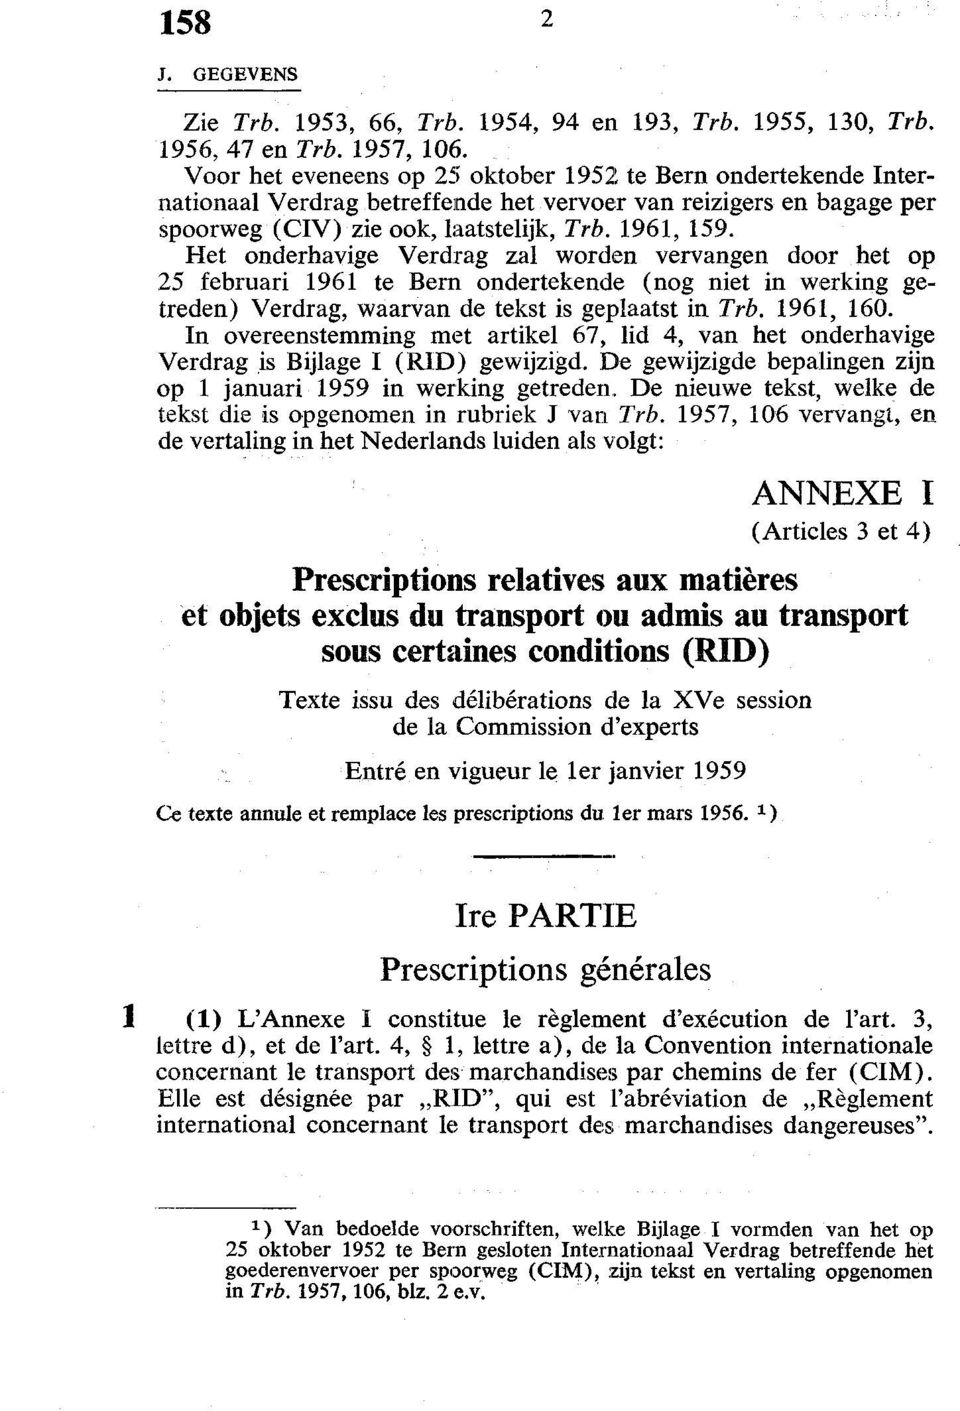 Het onderhavige Verdrag zal worden vervangen door het op 25 februari 1961 te Bern ondertekende (nog niet in werking getreden) Verdrag, waarvan de tekst is geplaatst in Trb. 1961, 160.